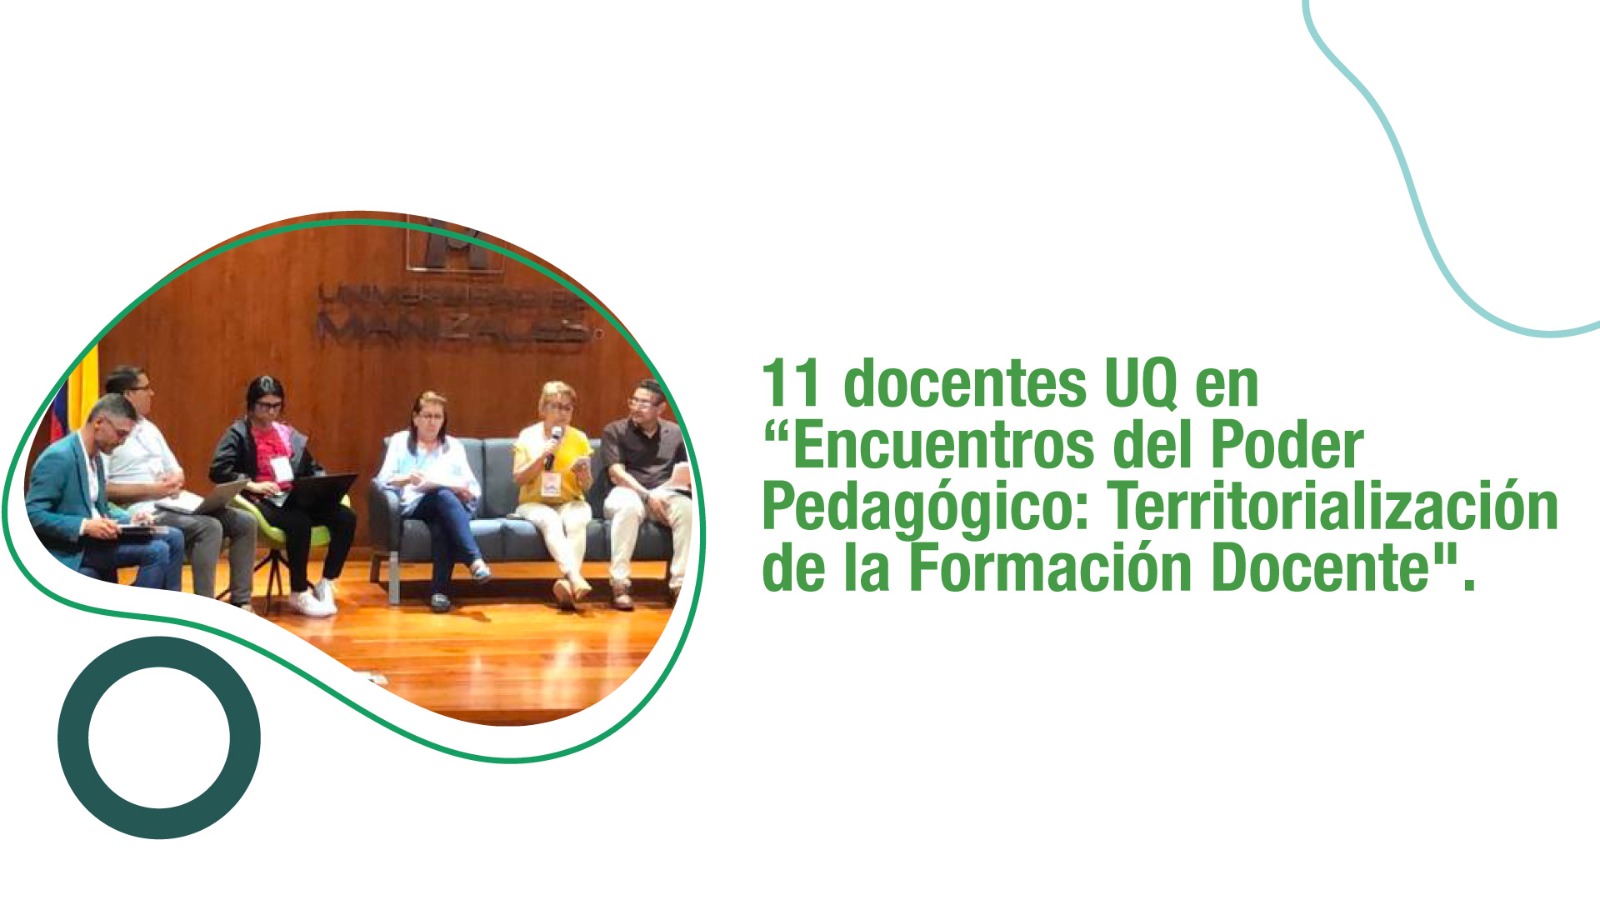 11 docentes UQ en "Encuentros del Poder Pedagógico: Territorialización de la Formación Docente"